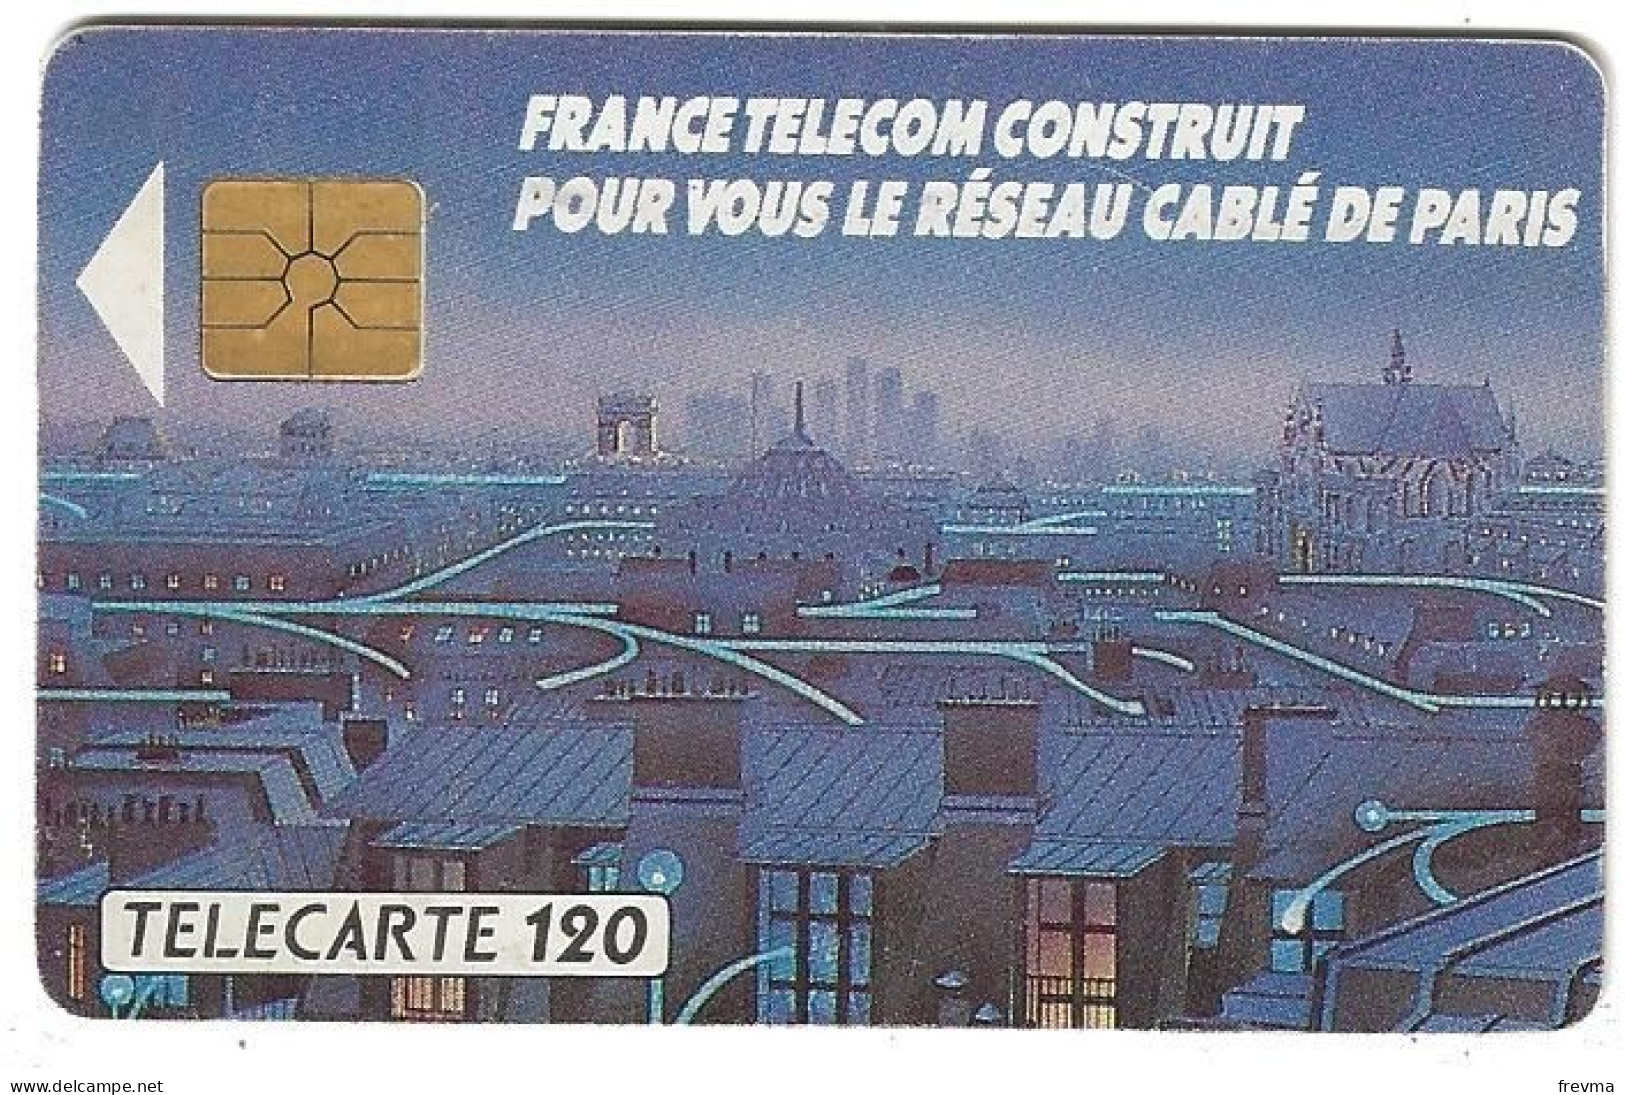 Telecarte F 110 Reseau Cablé De Paris 120 Unités GEM - 1990